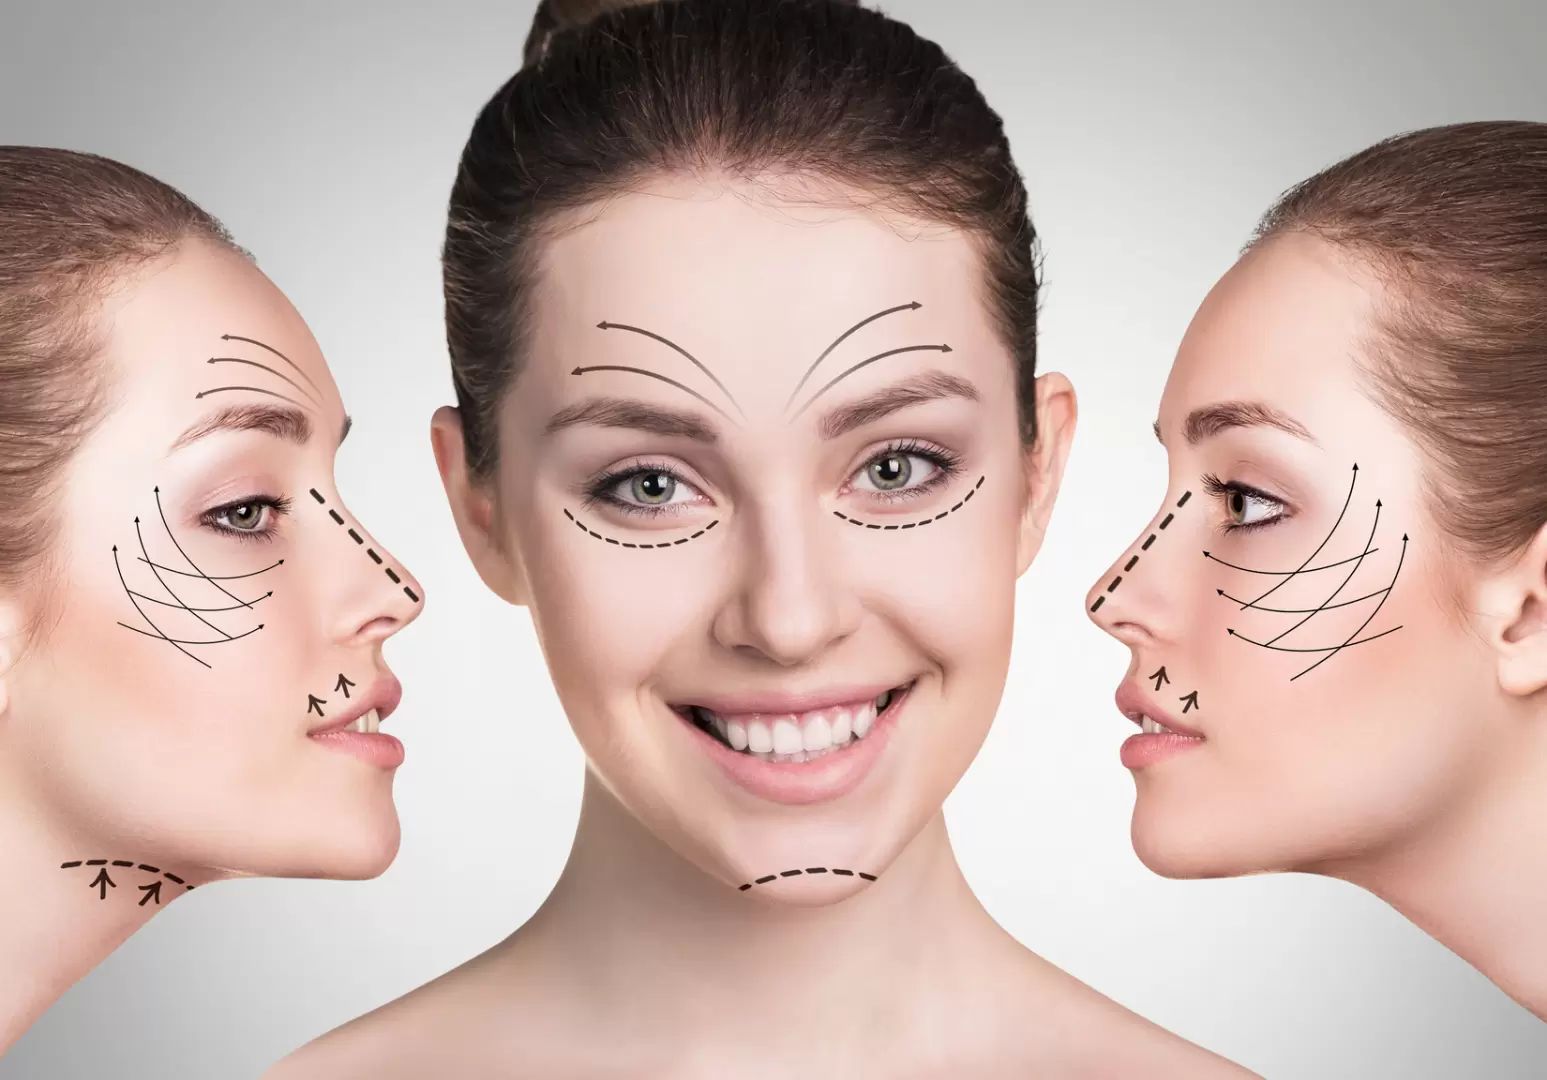 Choisissez une technique appropriée du lifting du visage en consultant un spécialiste esthétique expérimenté